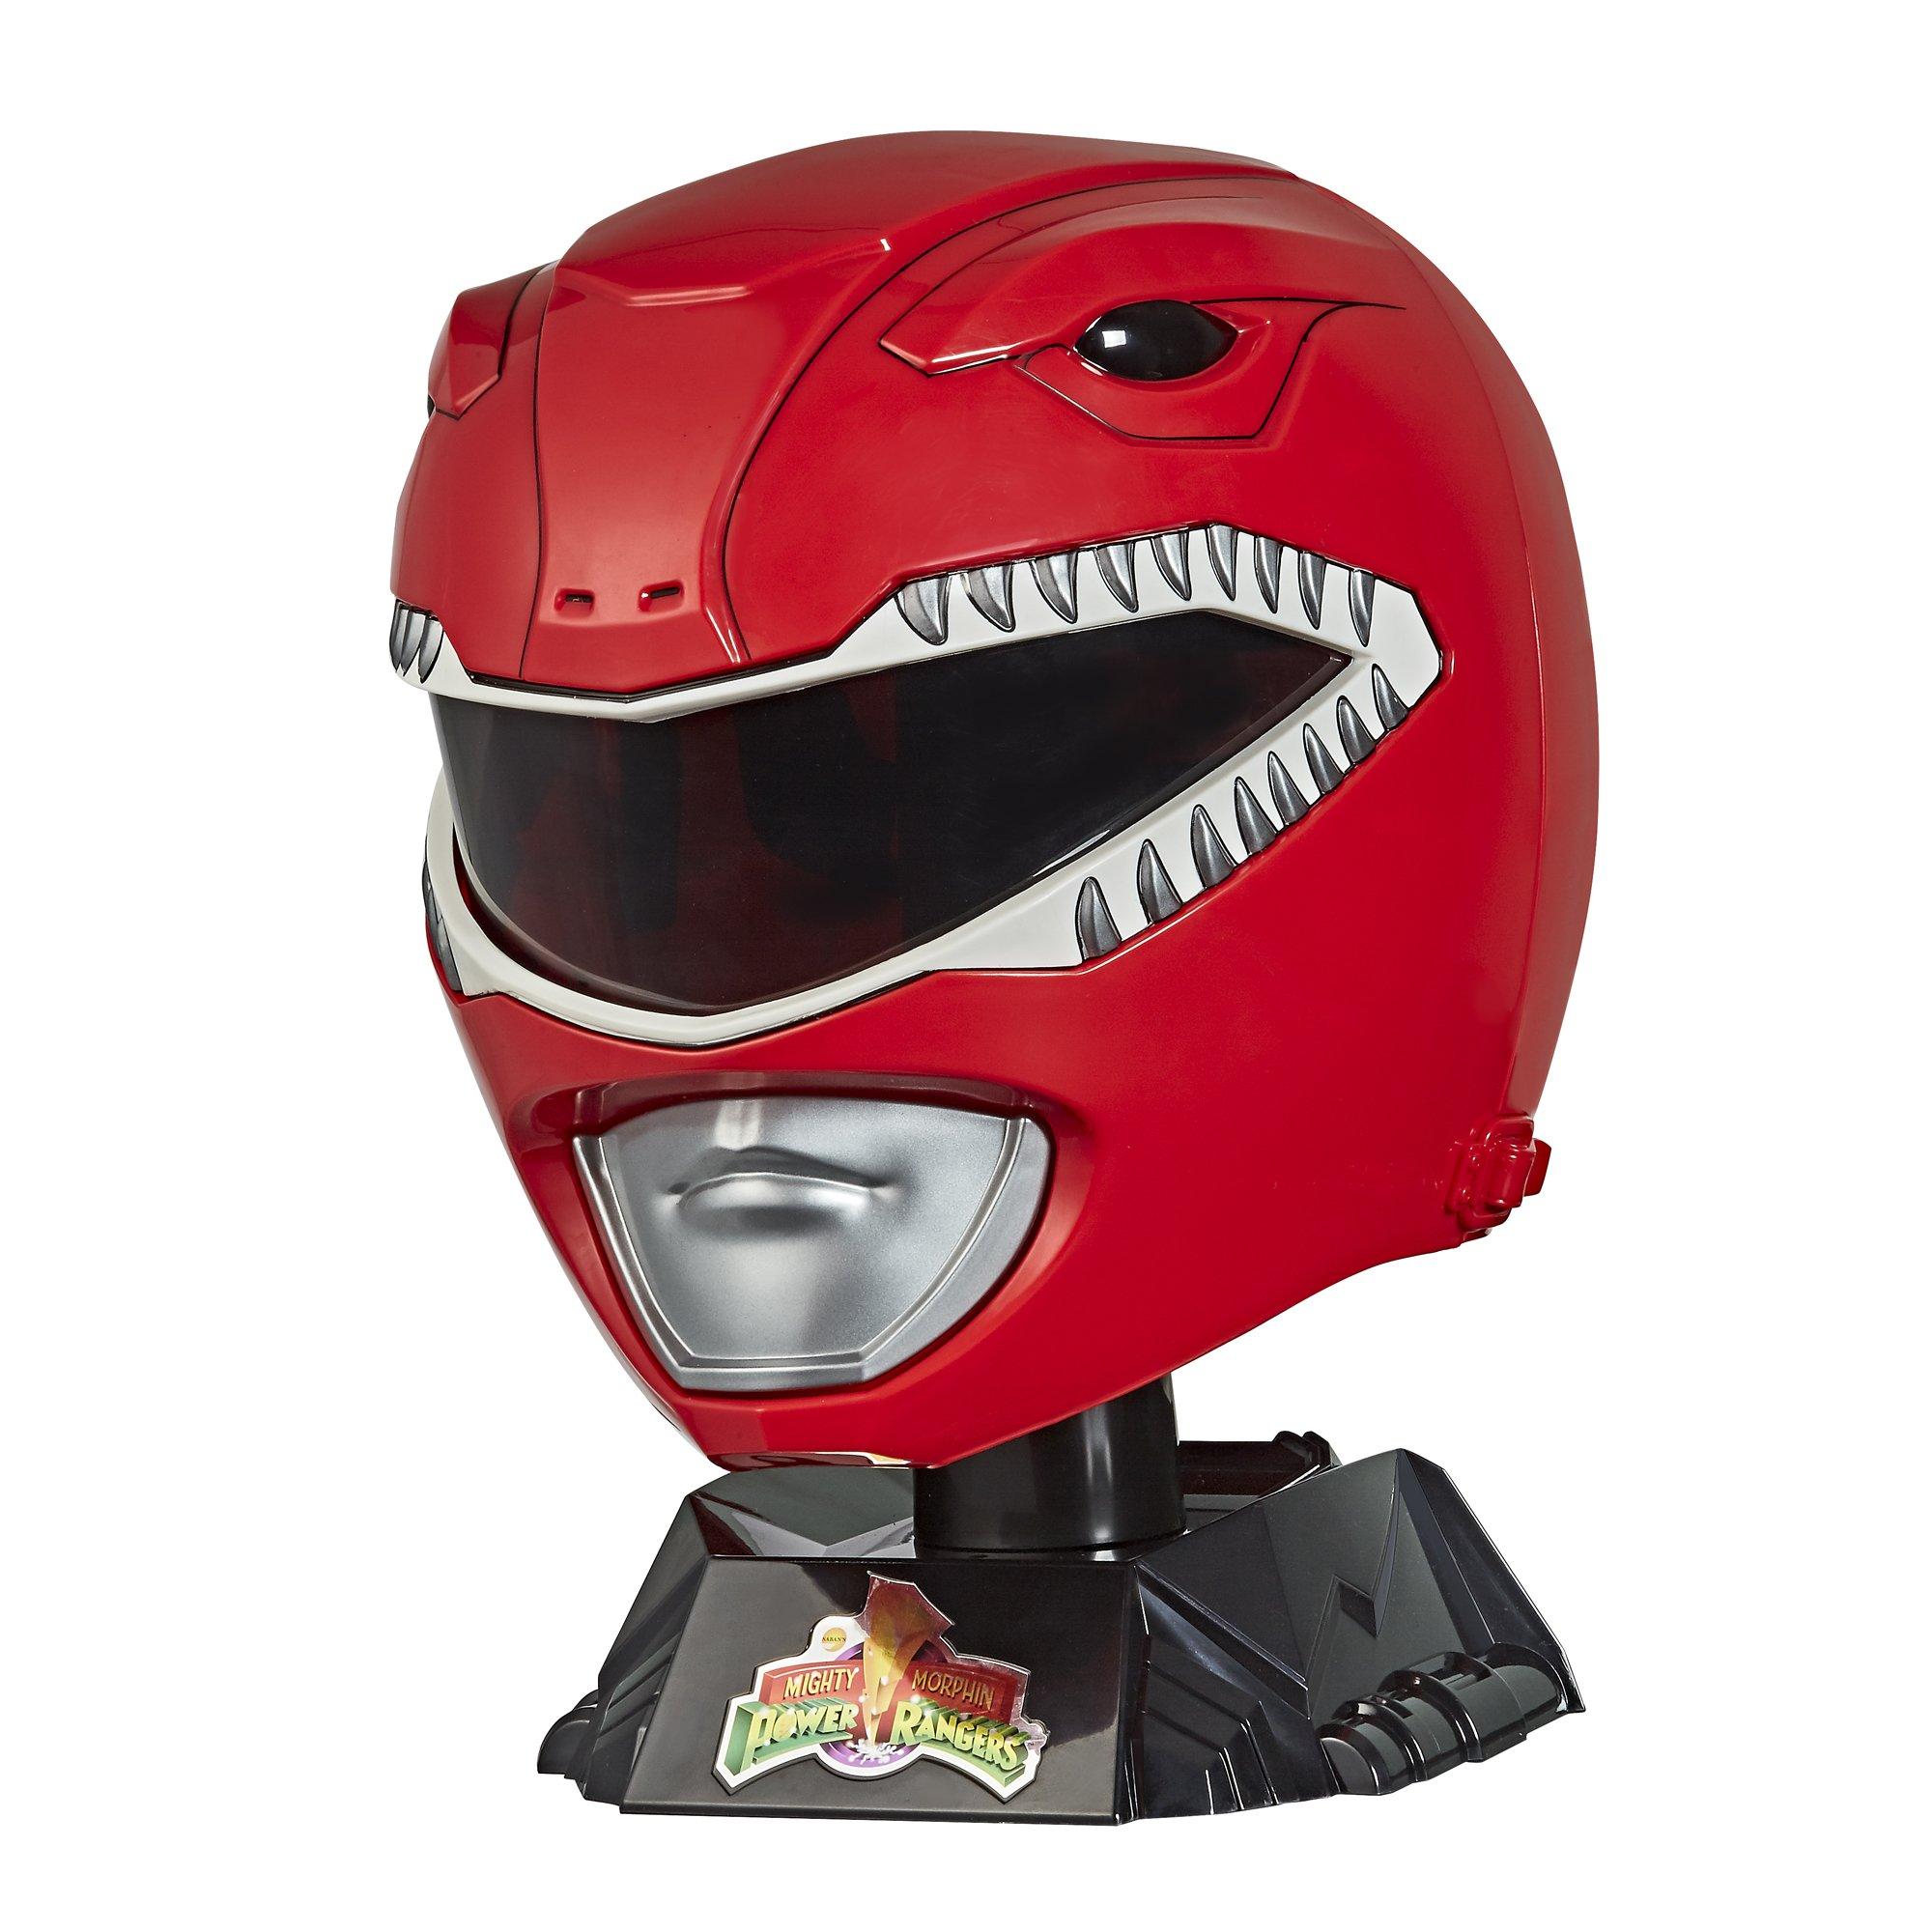 Mighty Morphin Power Rangers Lightning Collection Red Ranger Helmet Gamestop - redsteel ranger helmet a gamestop exclusive roblox